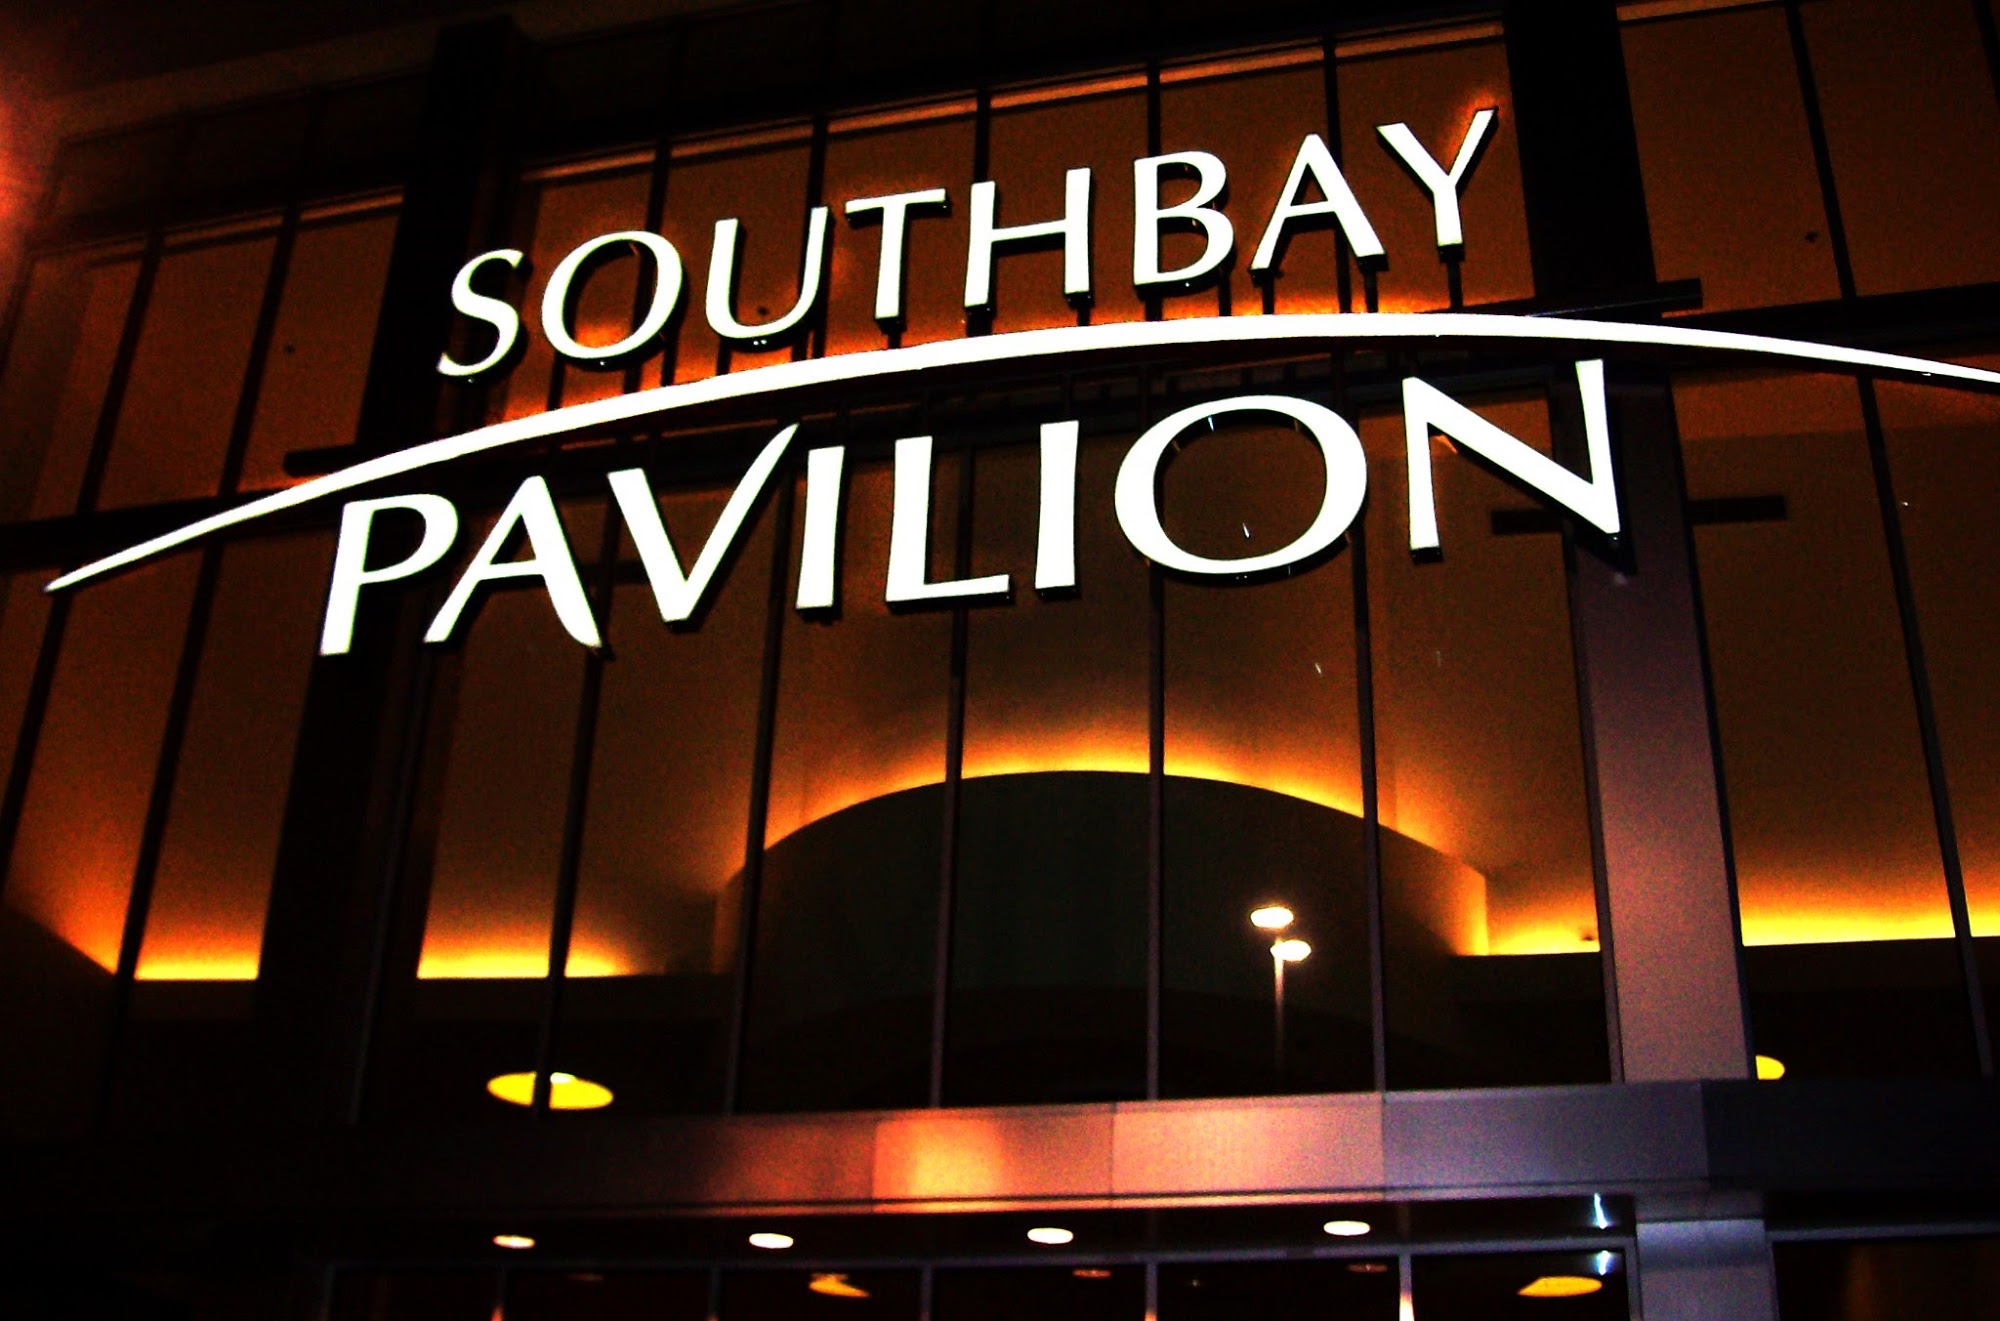 SouthBay Pavilion Mall